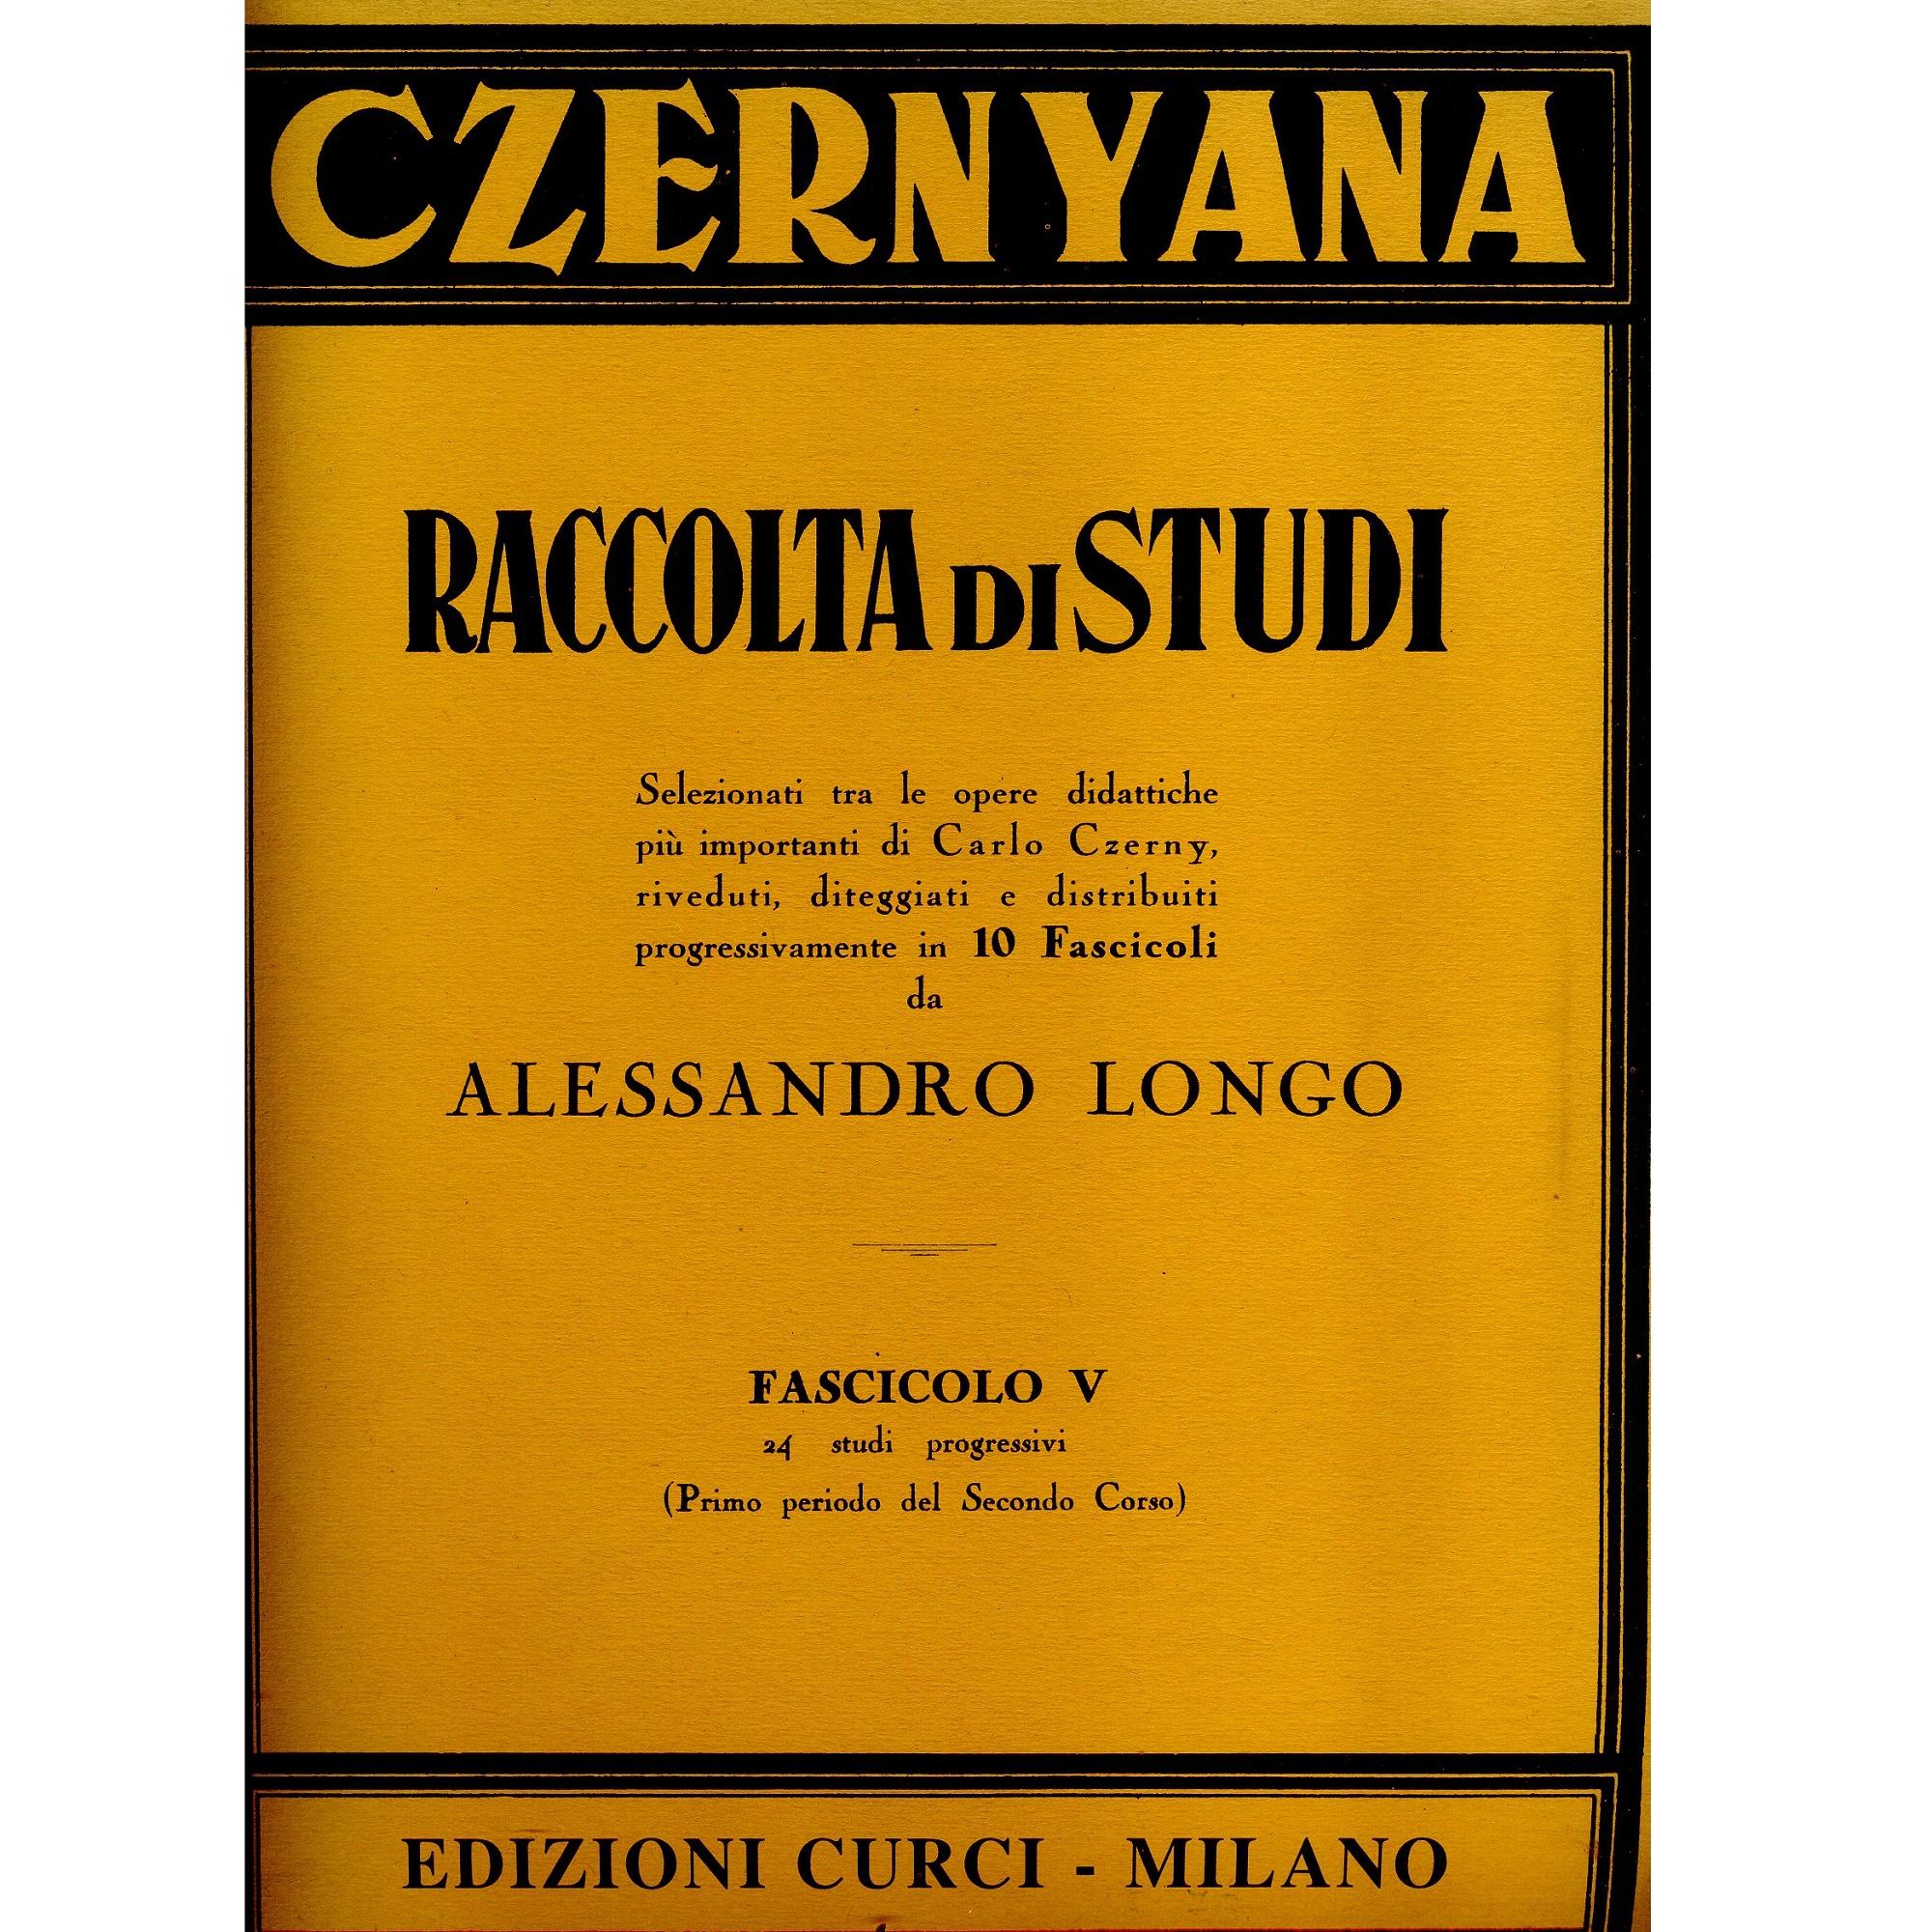 Czernyana Raccolta di studi (Longo) Fascicolo V 24 studi progressivi (Primo periodo del Secondo Corso) - Edizione Curci Milano